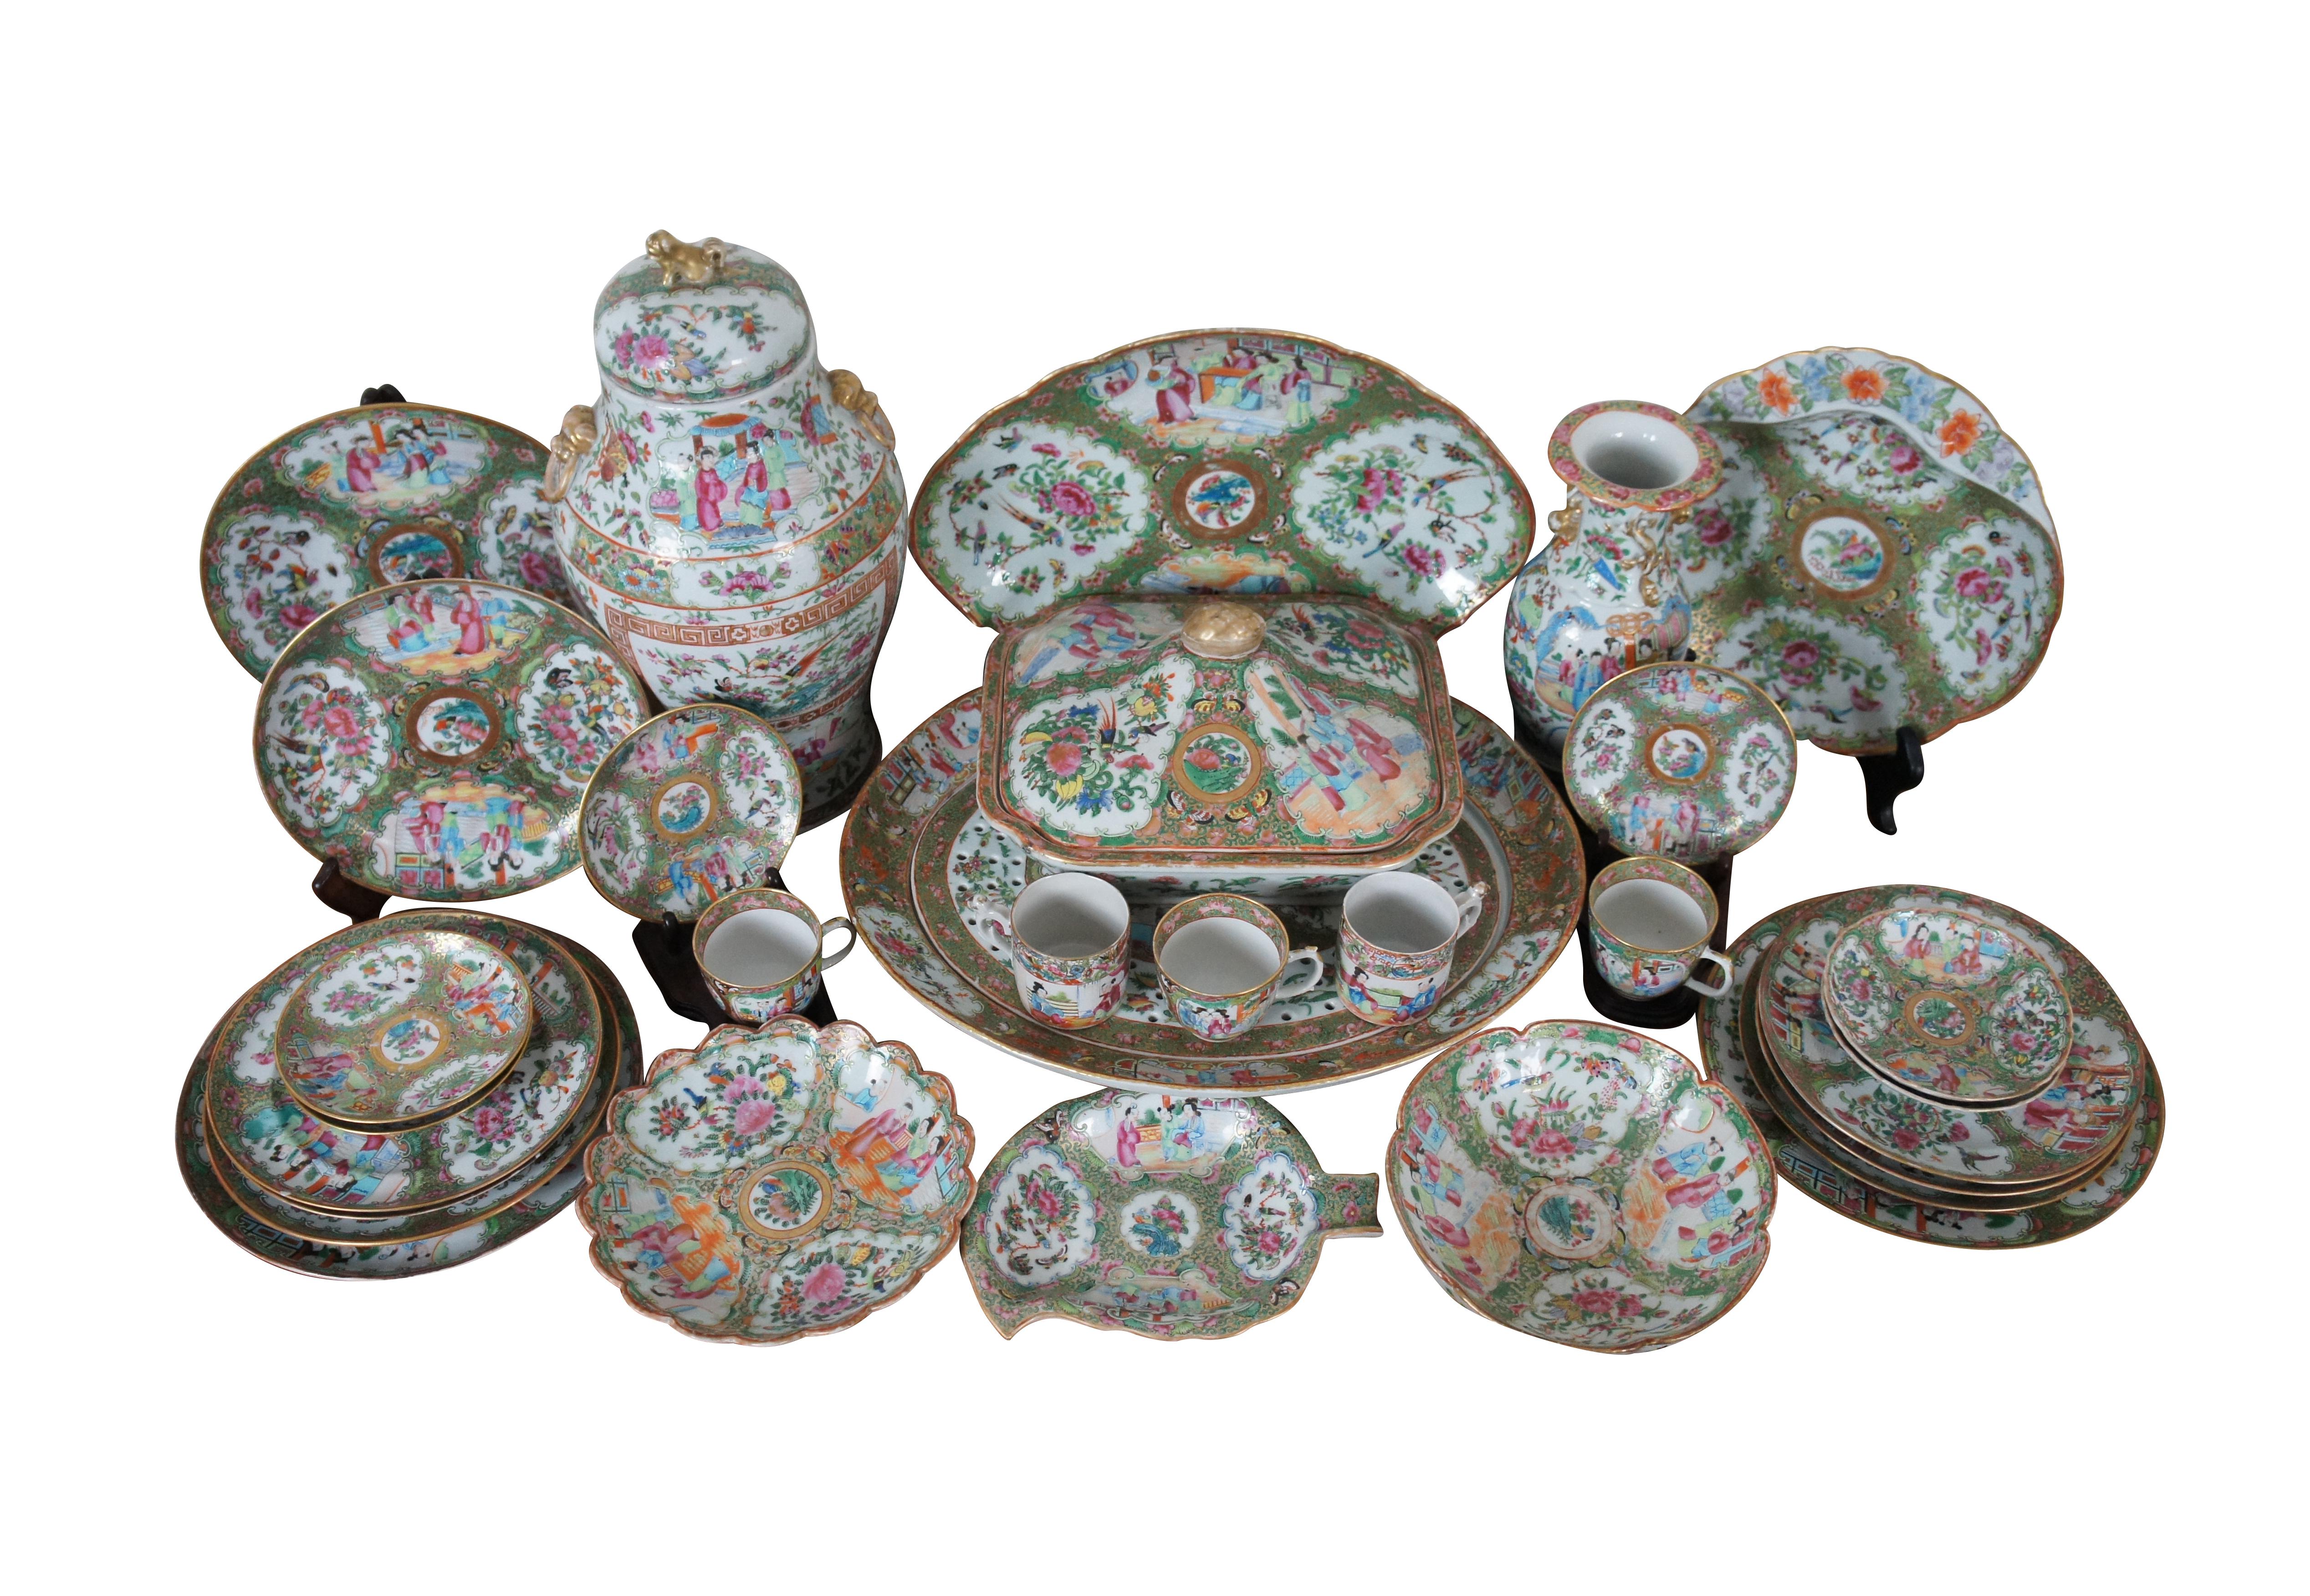 Ancienne porcelaine d'exportation chinoise de 32 pièces présentant le motif Mandarin de la Famille Rose.  L'ensemble comprend une urne de cheminée en forme de pot de gingembre, des assiettes, des plateaux, un vase, des assiettes de service /